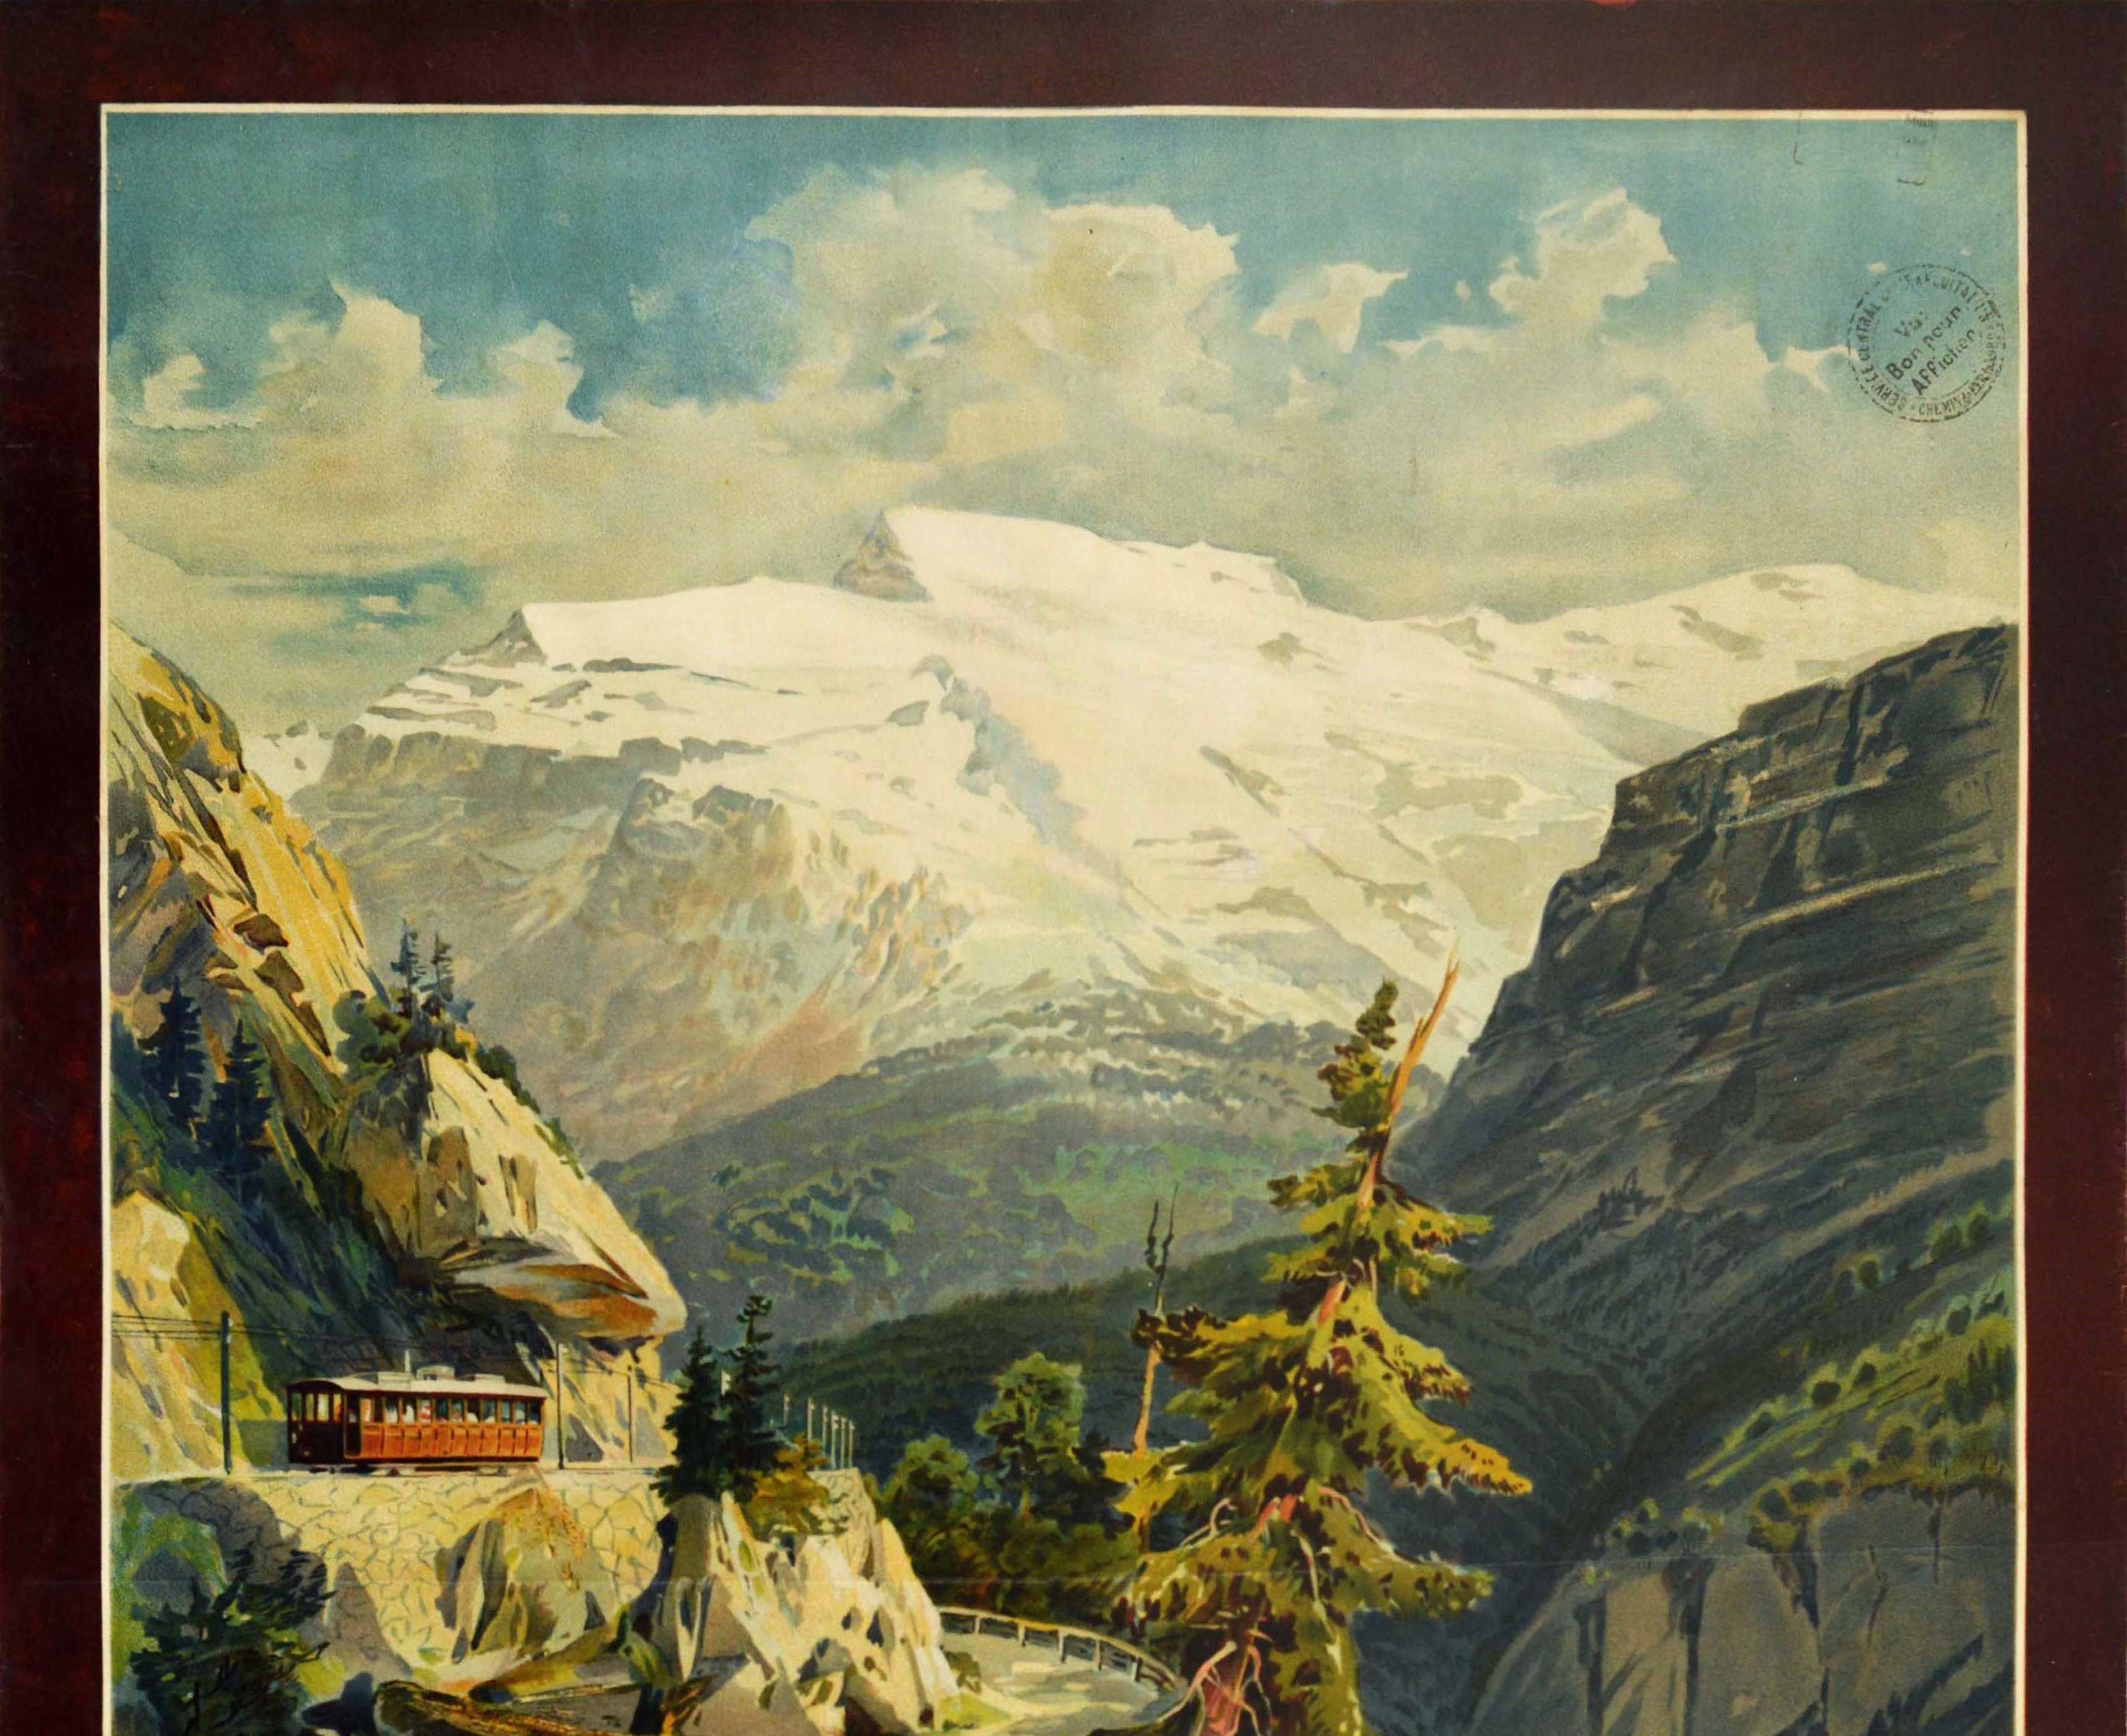 Original Antique Poster Stansstad Engelberg Railway Switzerland Swiss Alps View - Print by Anton Reckziegel